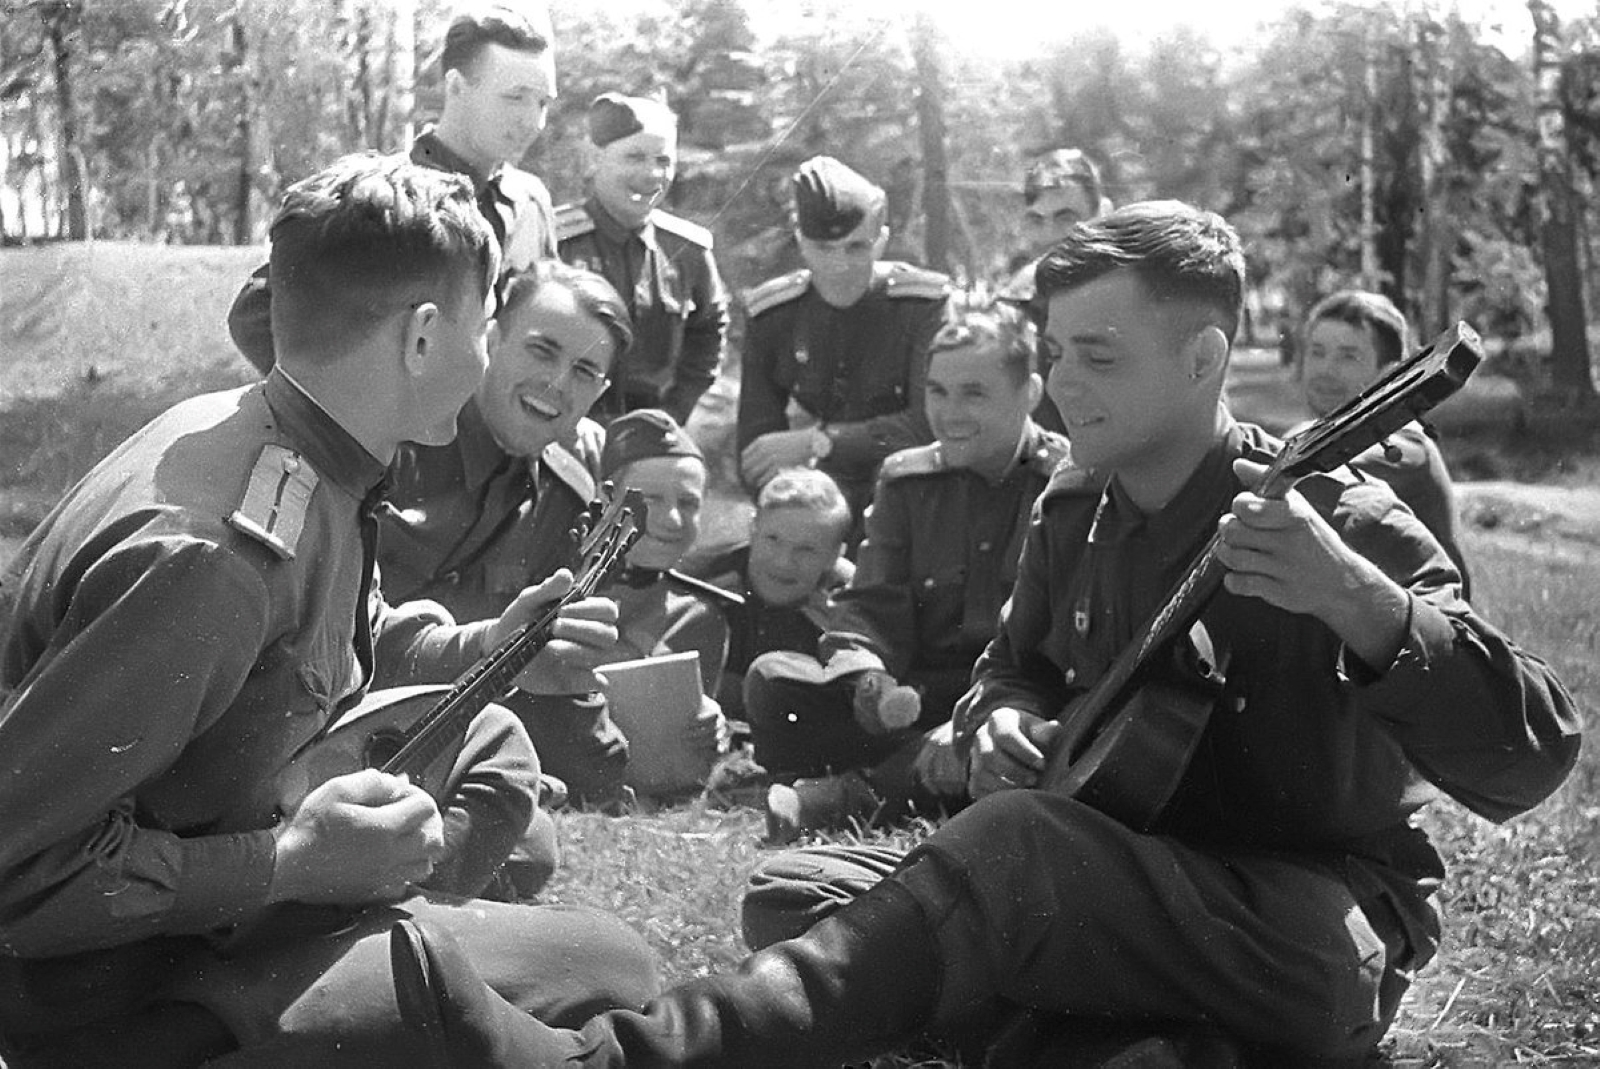 Развлечение 9 мая. Солдаты Великой Отечественной войны. Военные фотографии. Молодые ребята на войне. Картинки о войне.